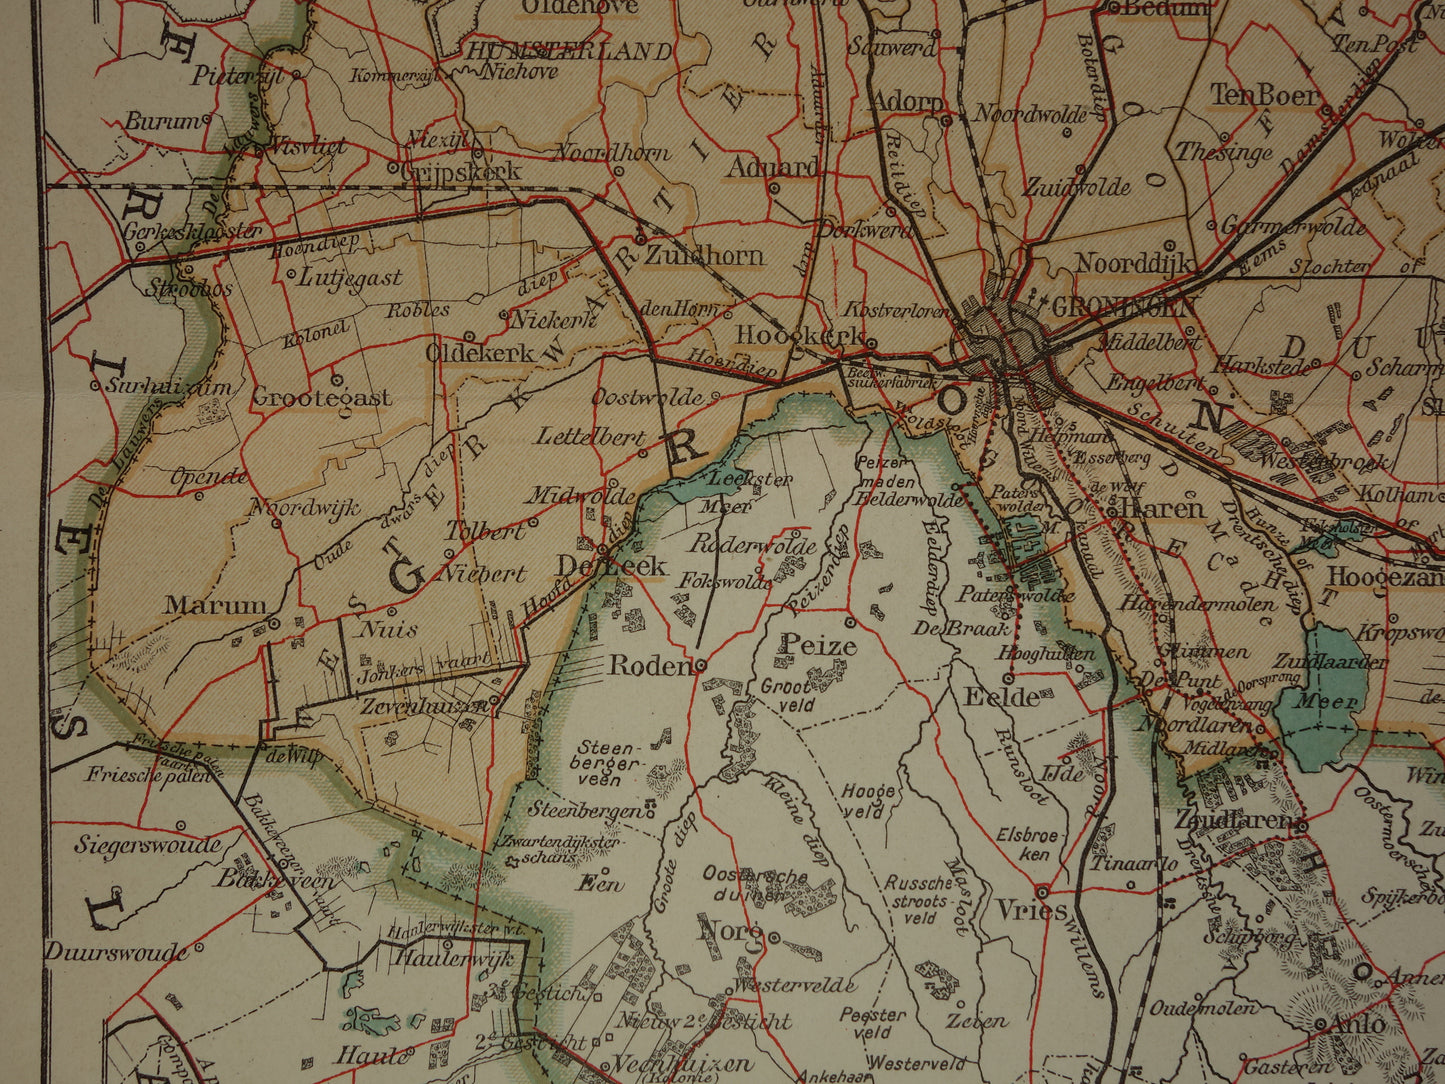 GRONINGEN oude kaart van provincie Groningen 1908 originele antieke Nederlandse landkaart Hoogezand Veendam